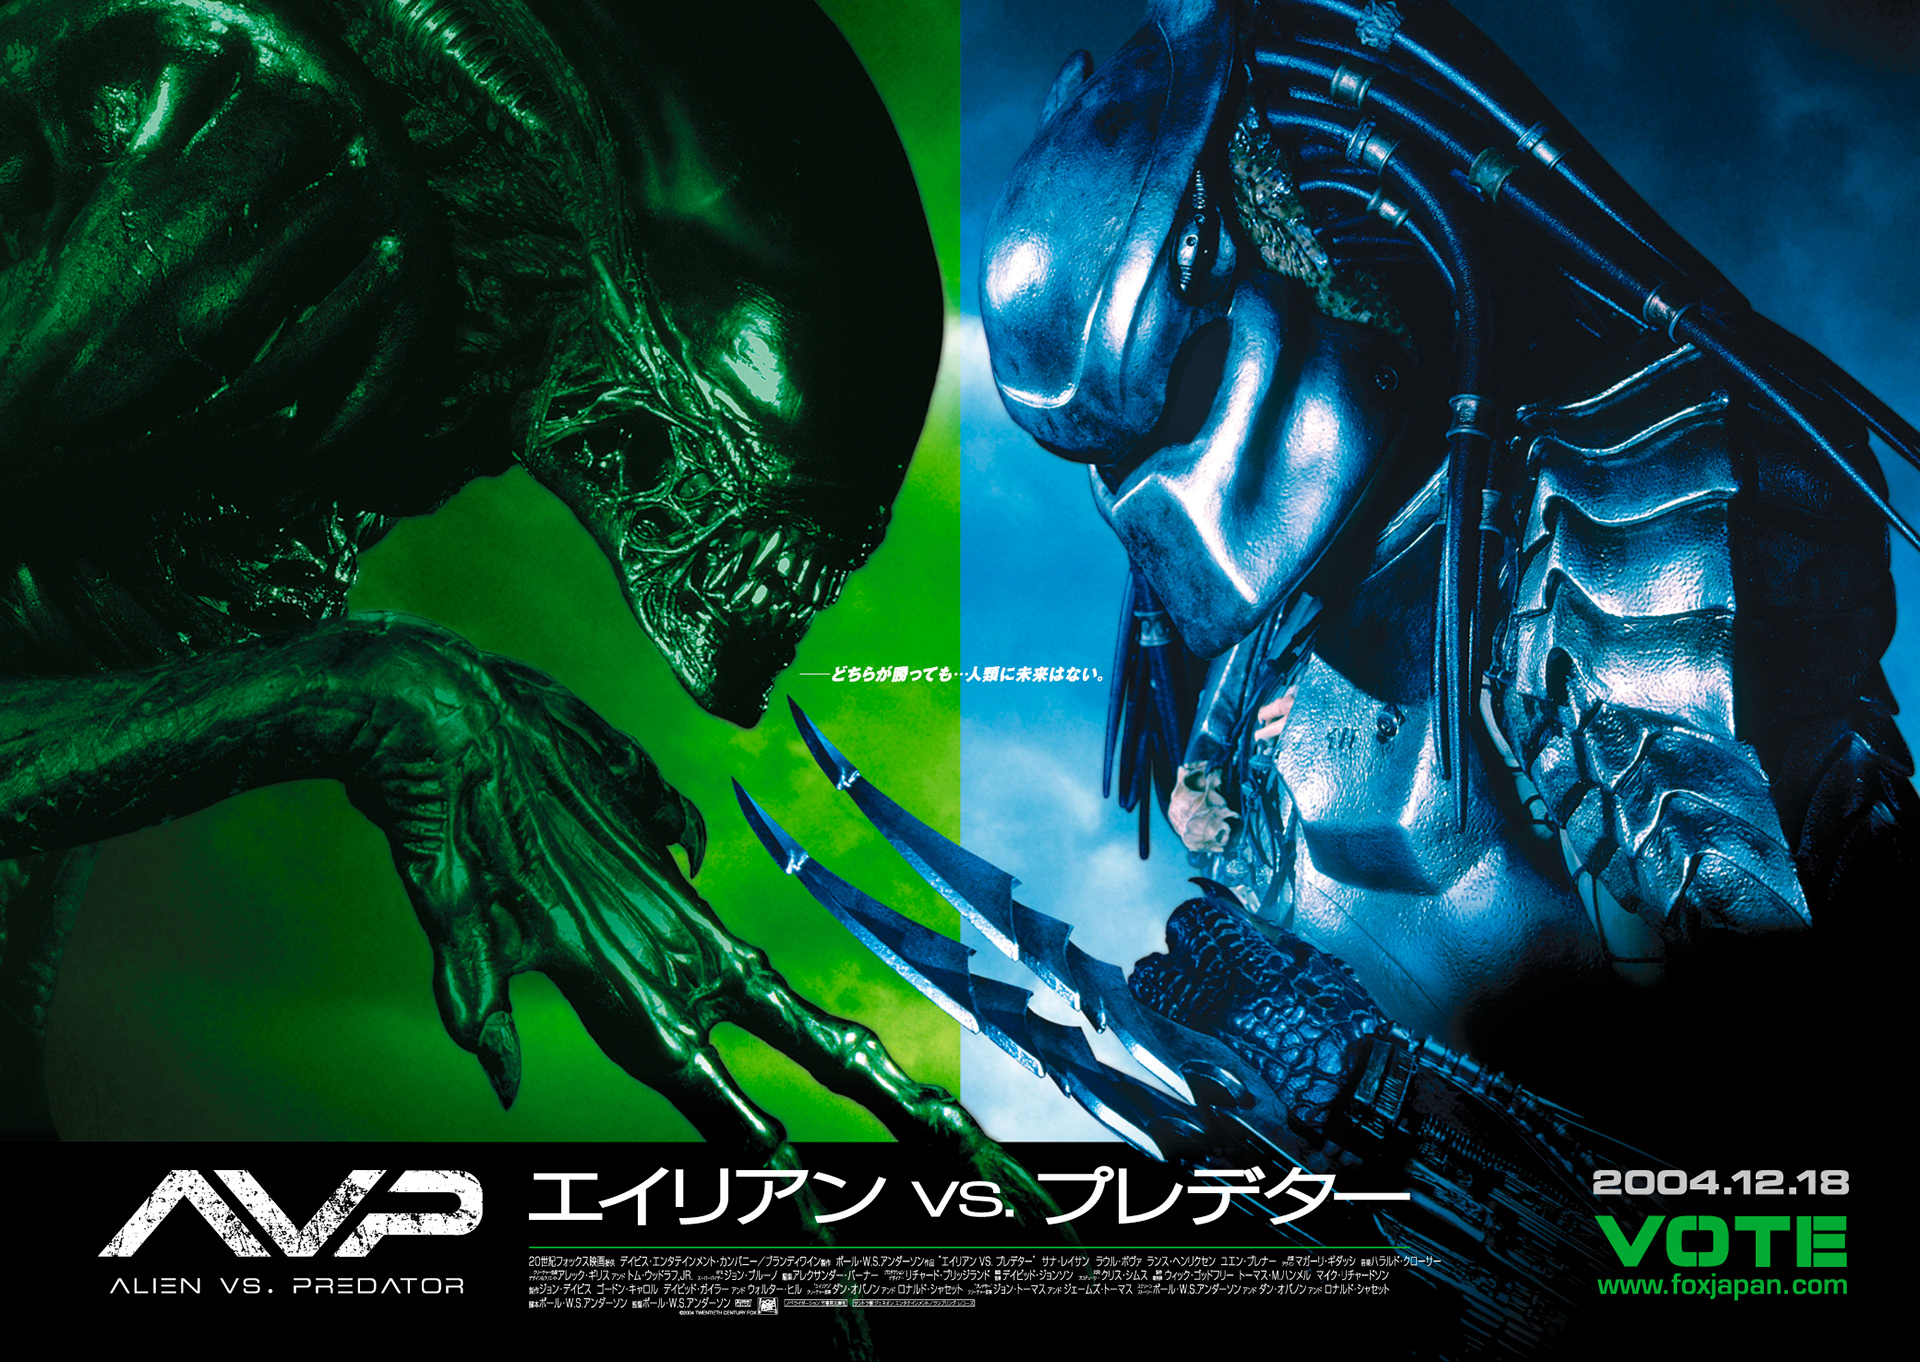 Alien versus Predator demo to arrive tommorow